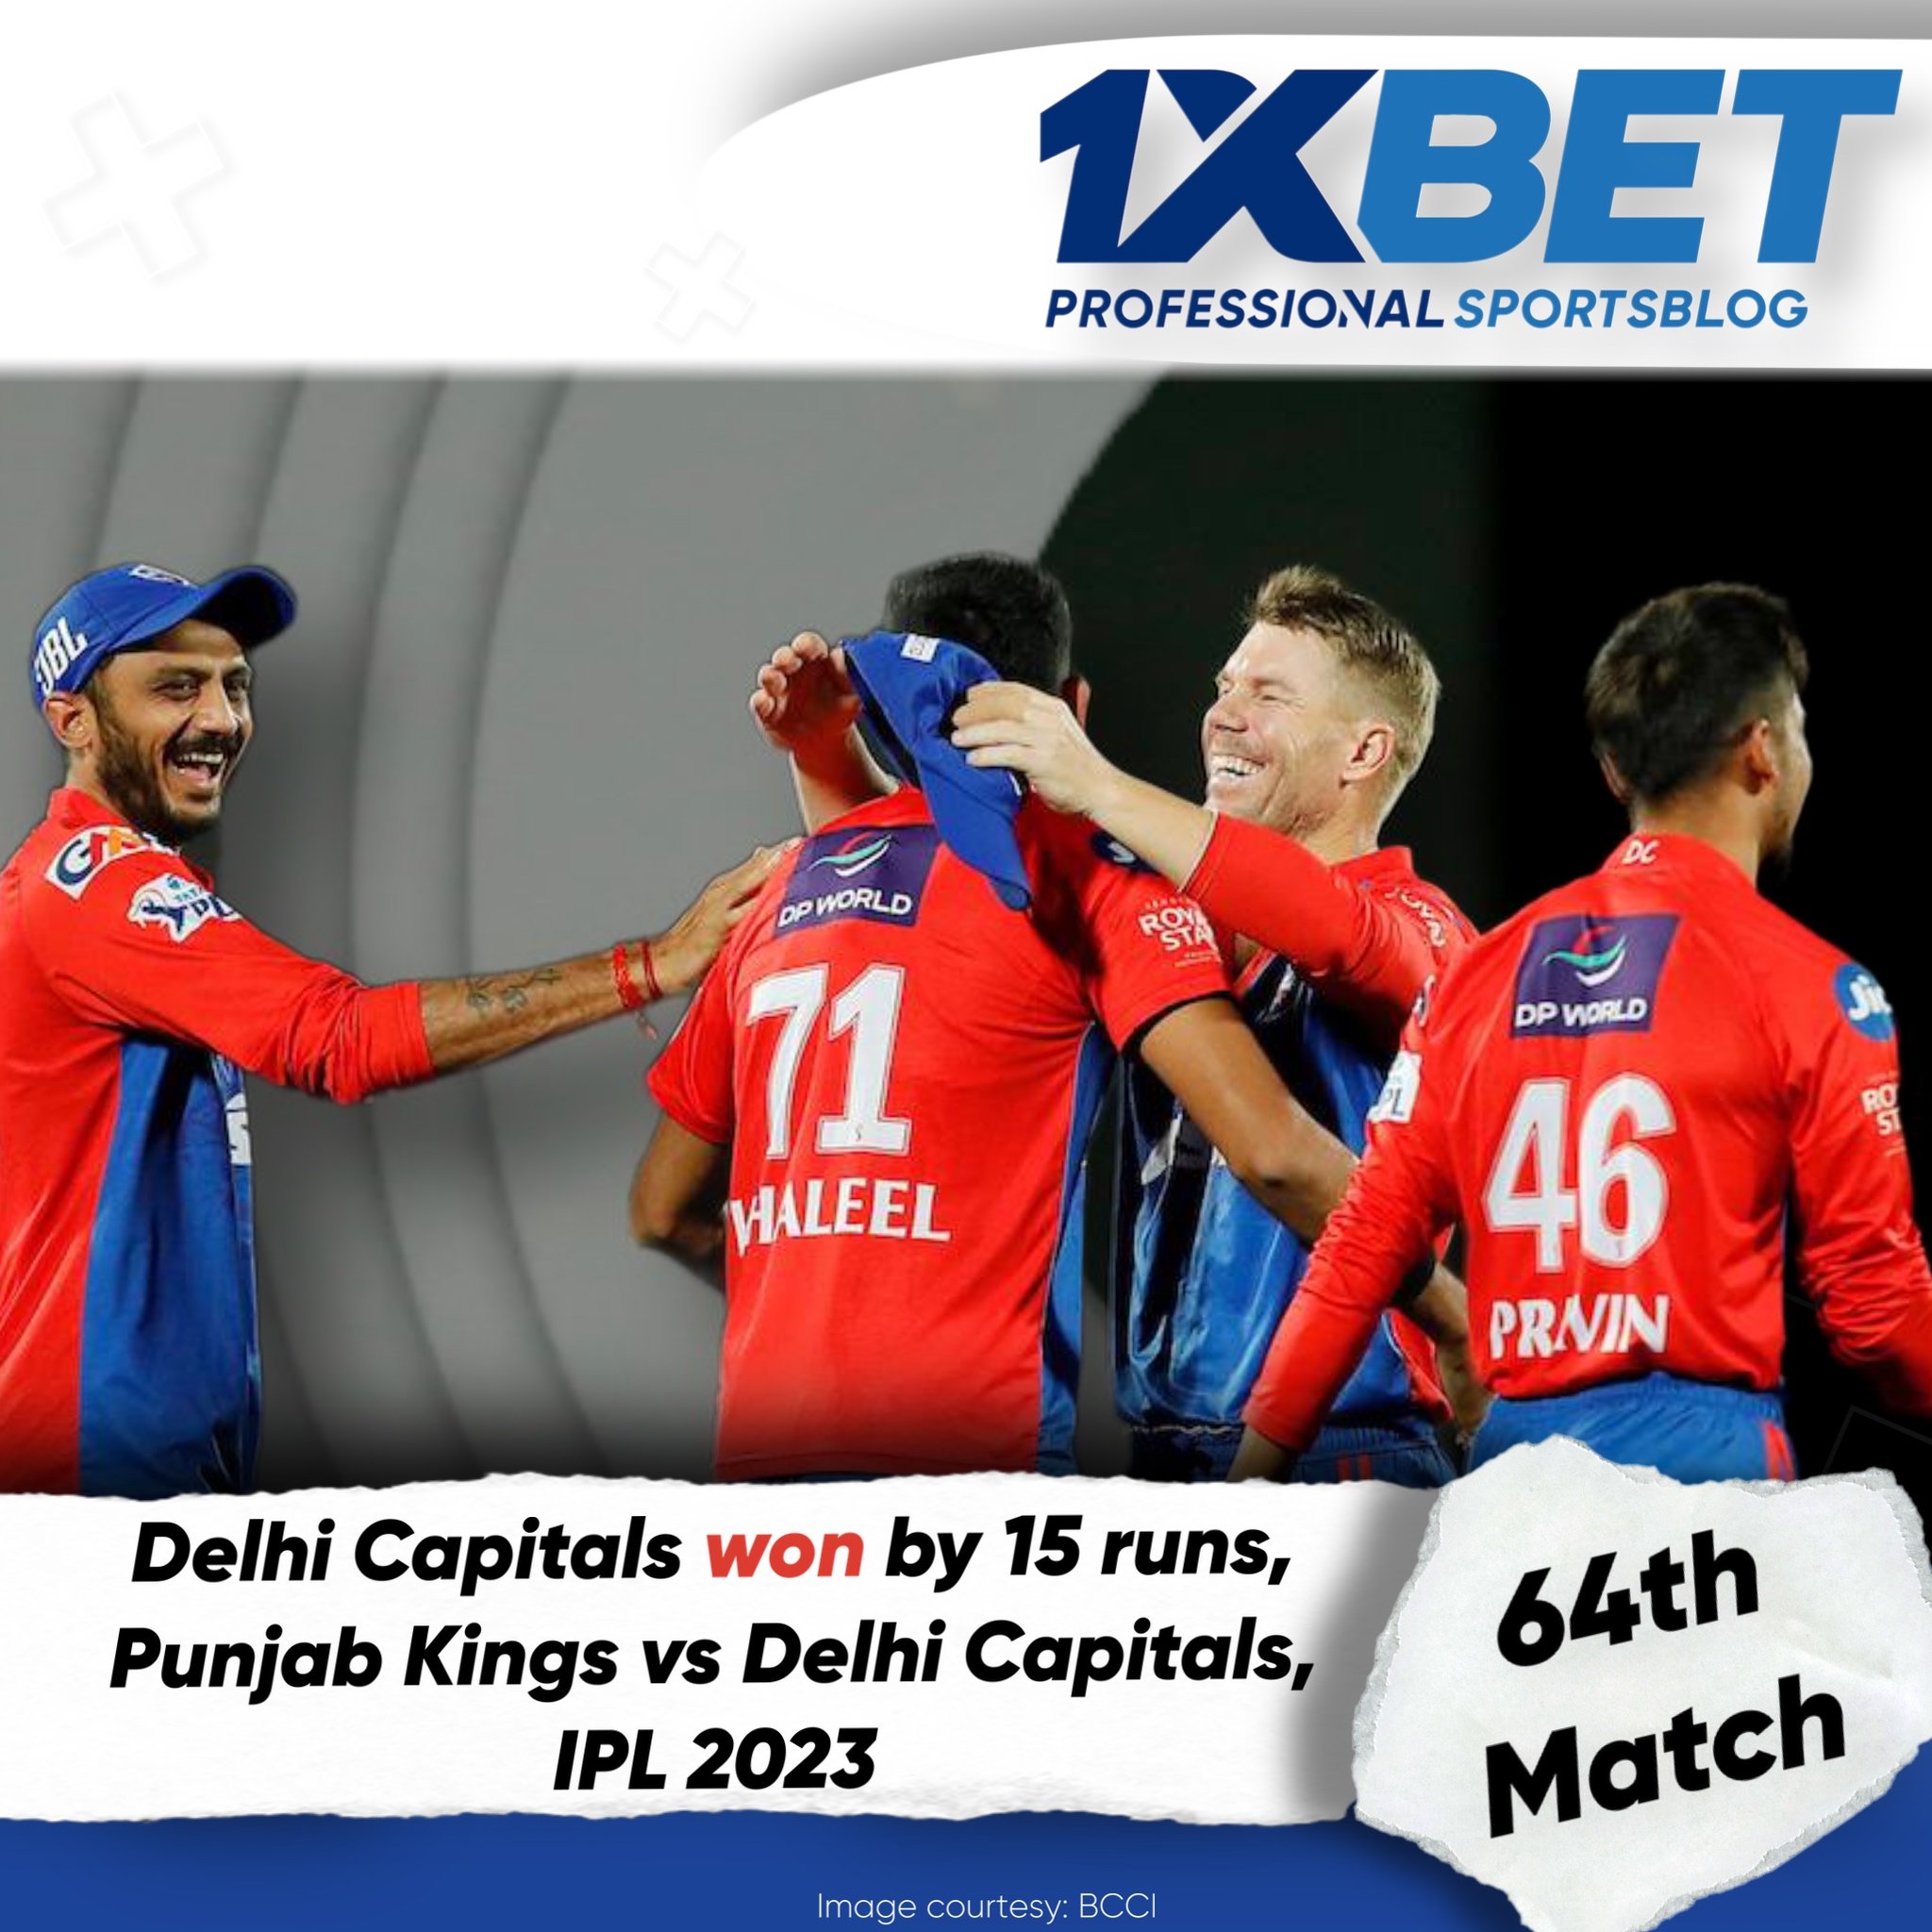 Delhi Capitals won by 15 runs